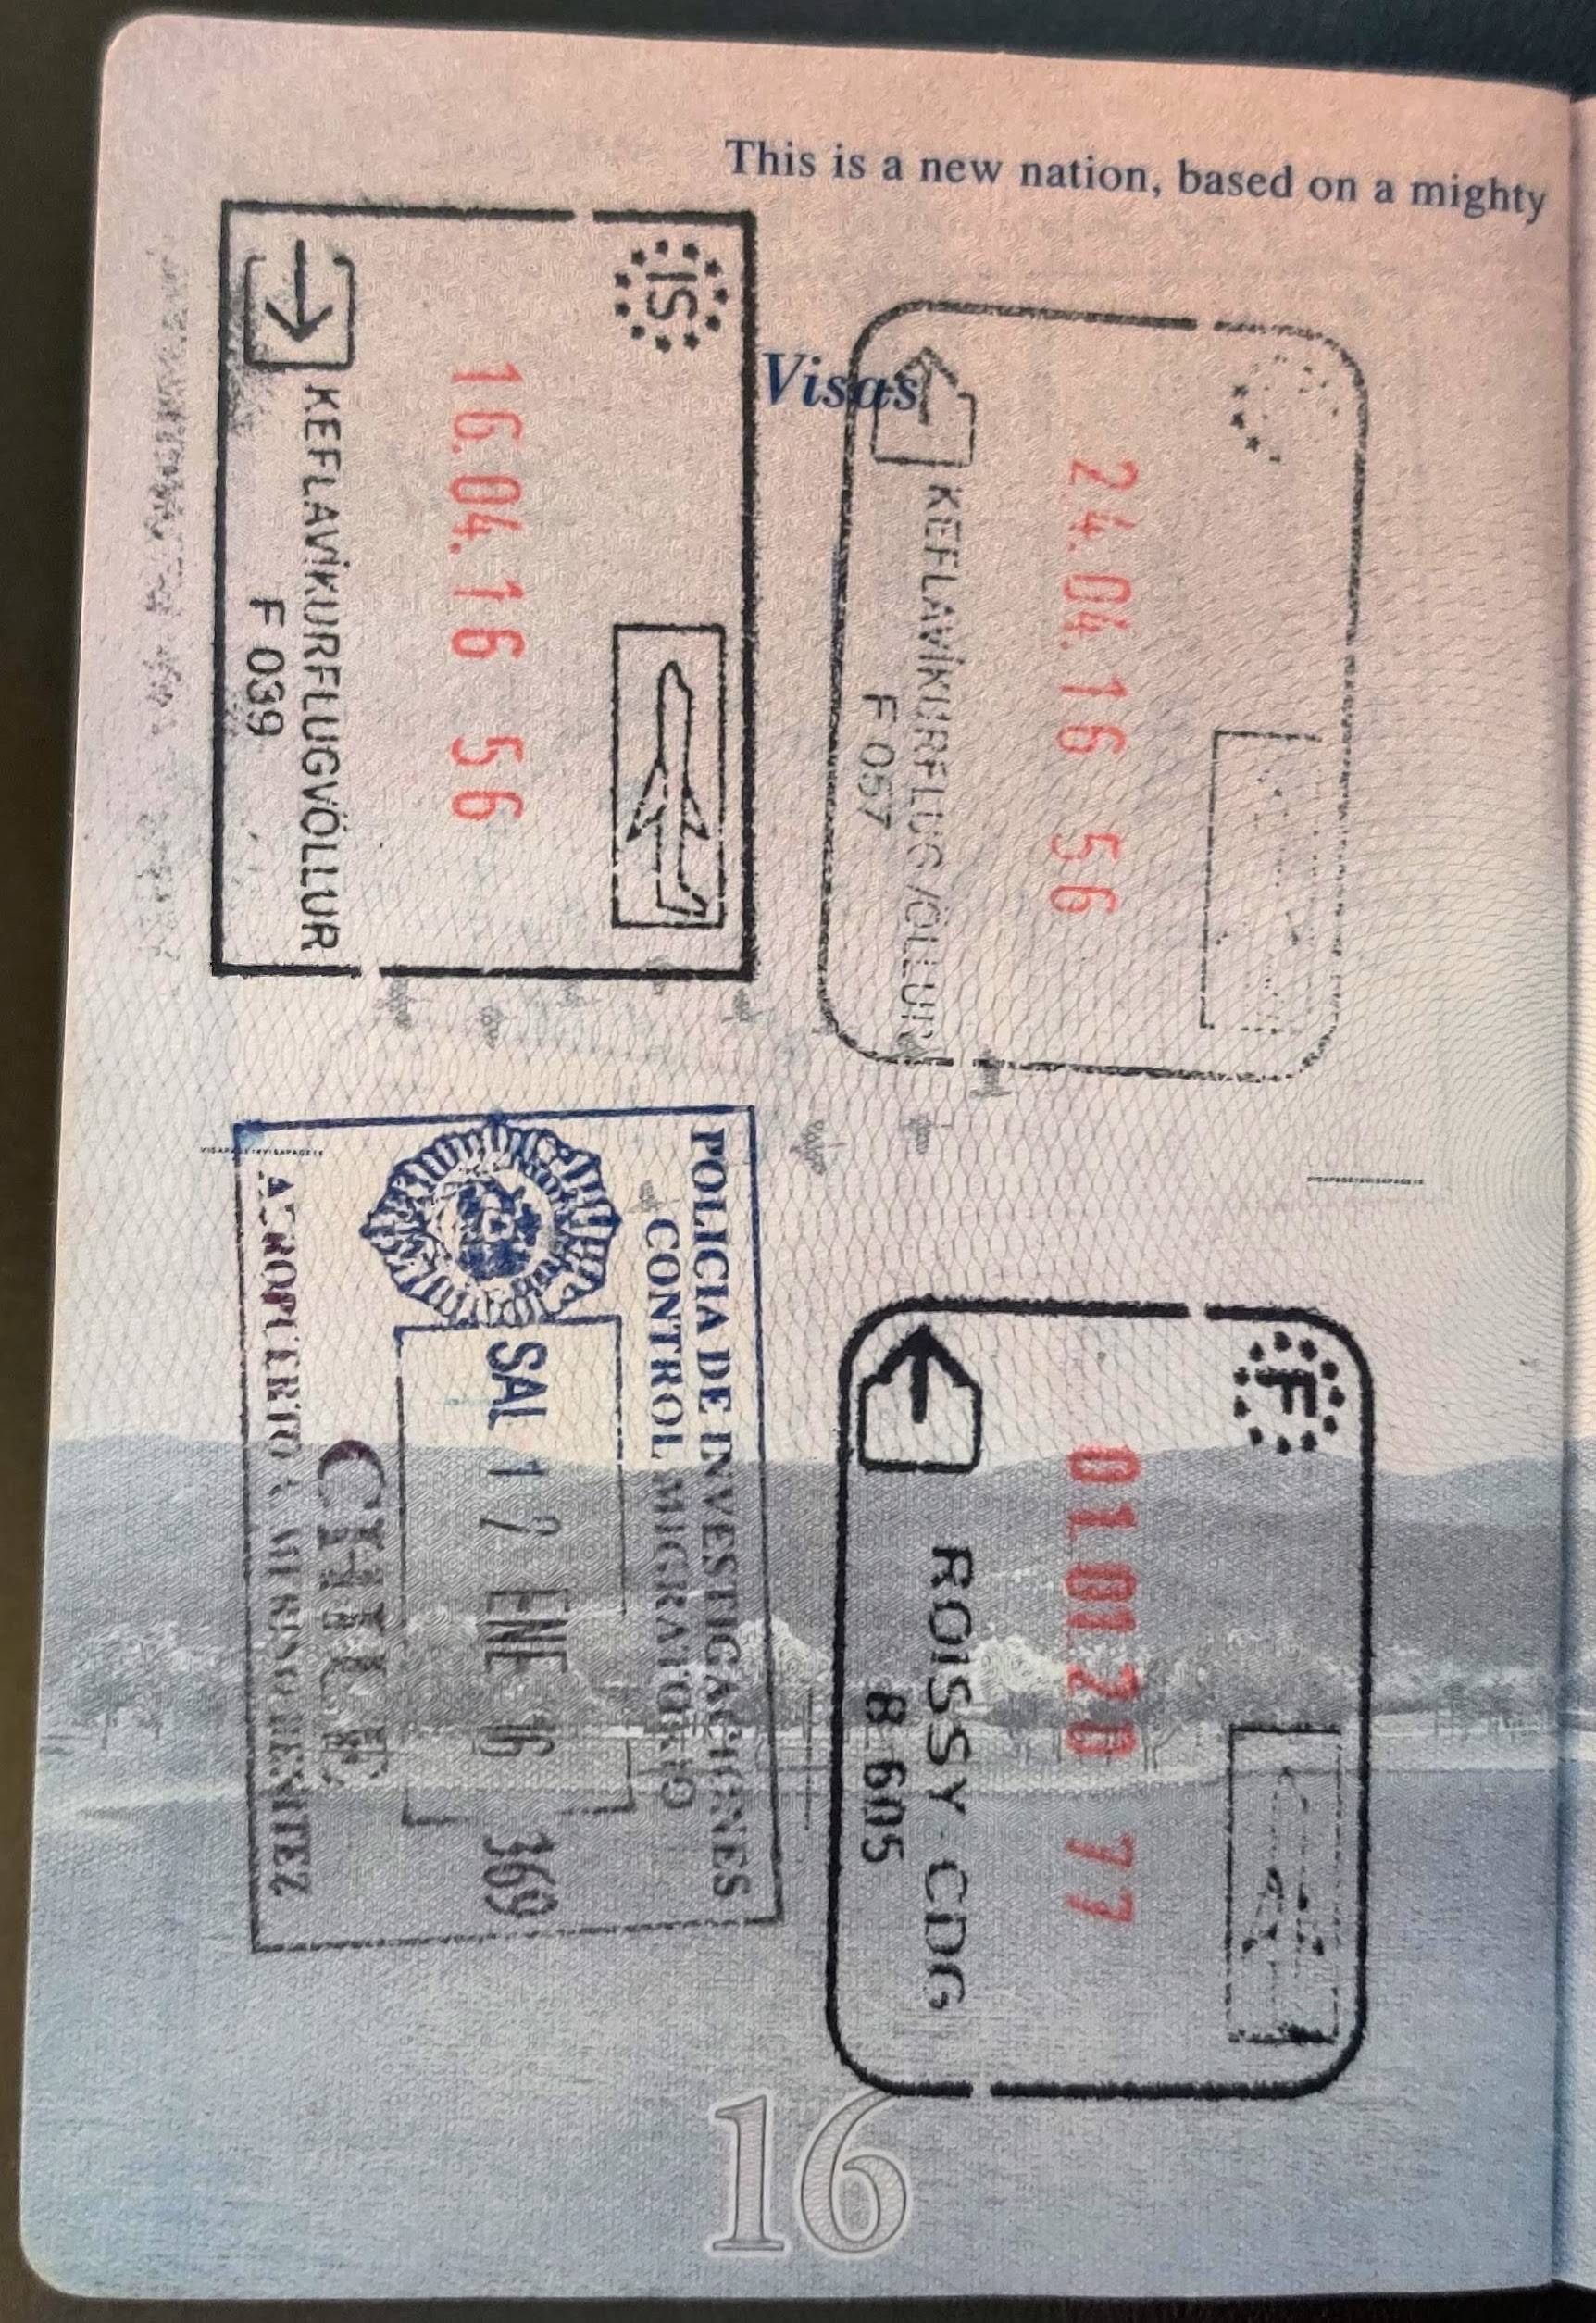 passport renewal time frame